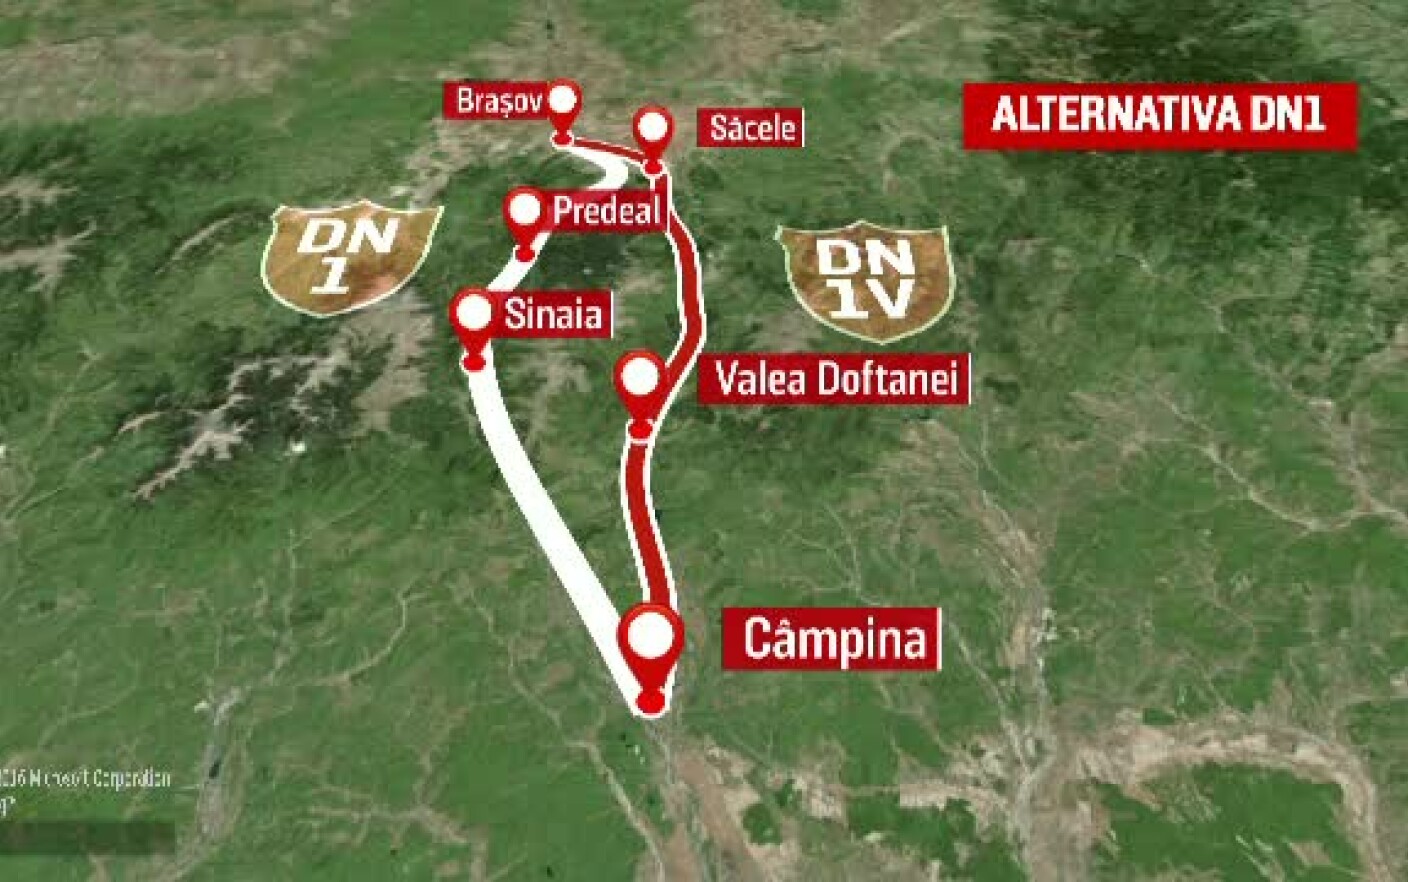 Anul 2025, termenul de finalizare a lucrărilor la drumul alternativă la DN1, care va duce la Braşov prin Valea Doftanei